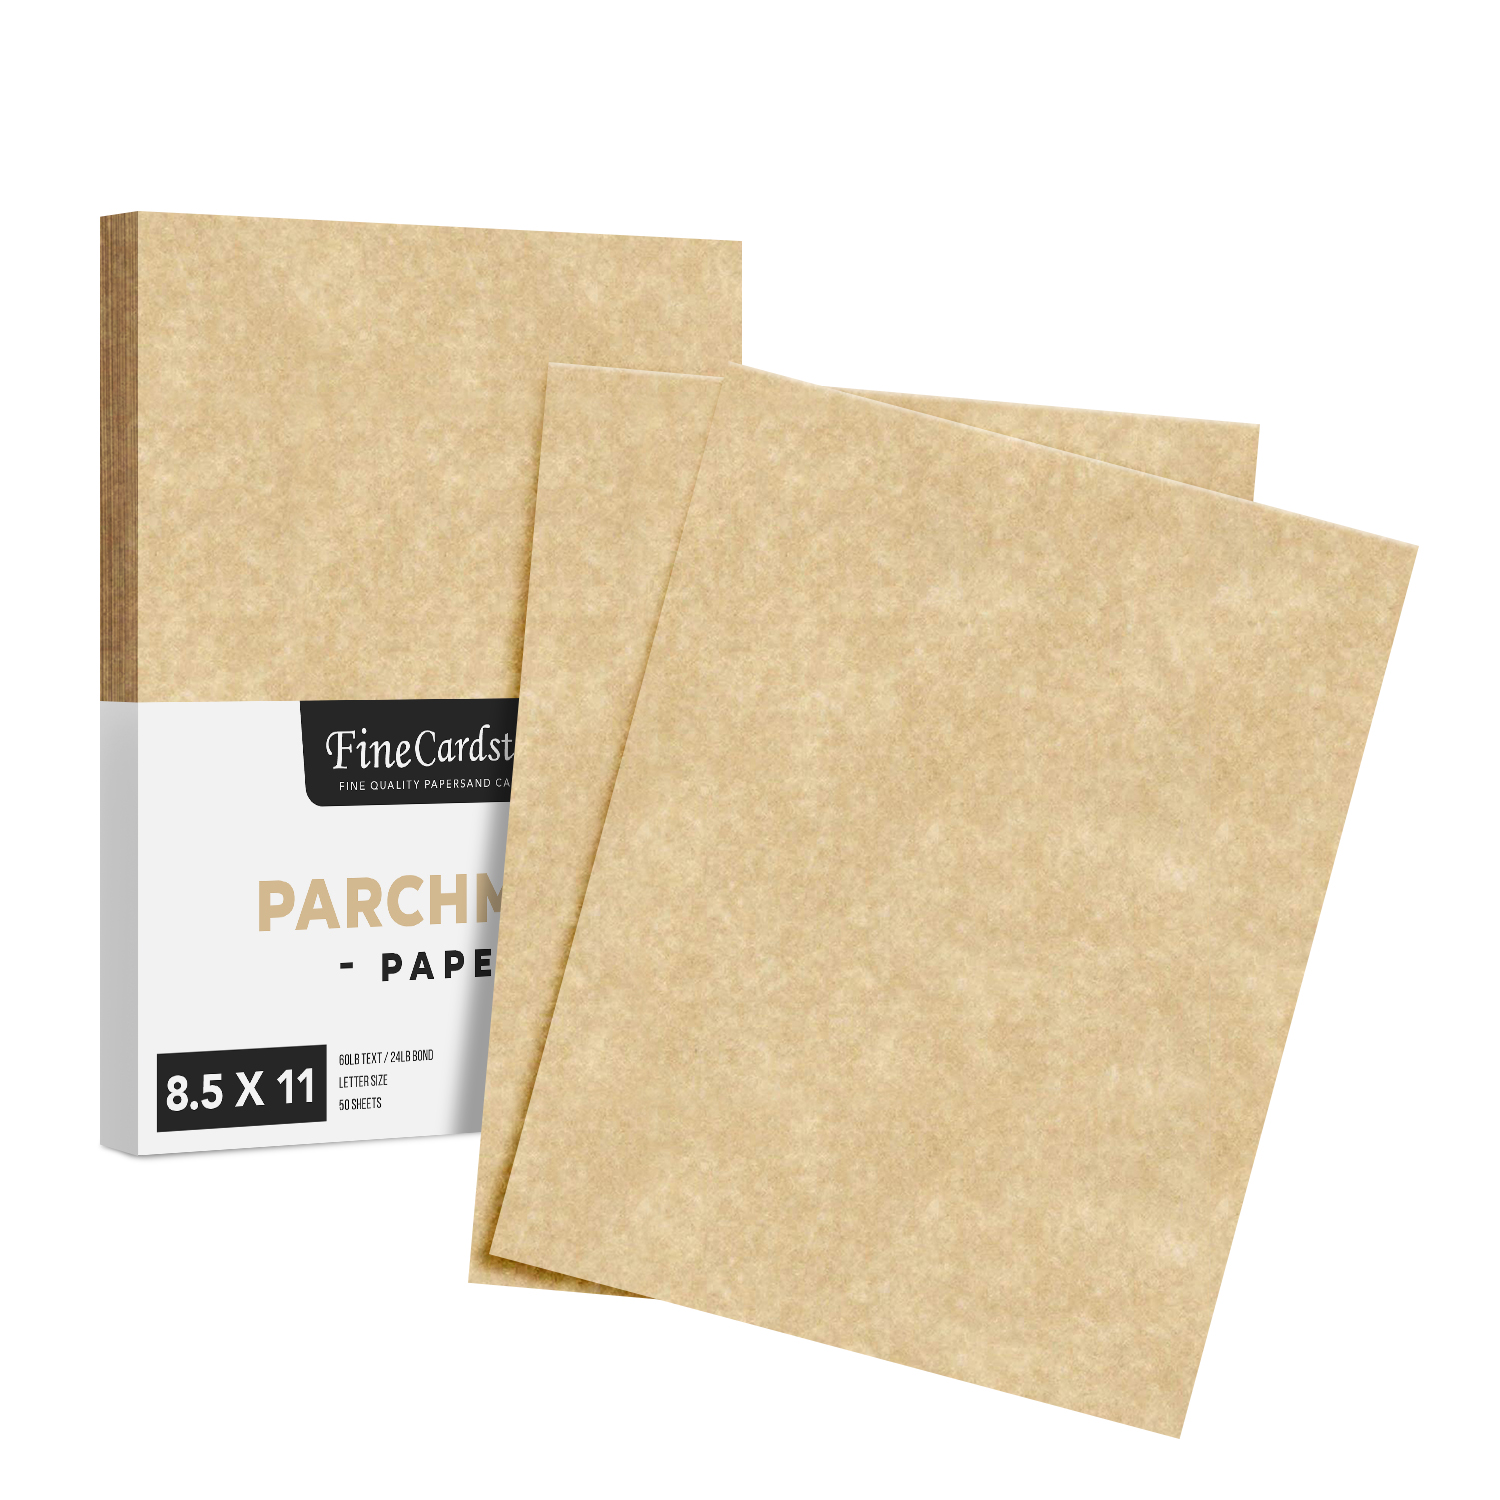 8.5 x 11 New White Stationery Parchment Paper - 24lb Bond/60lb